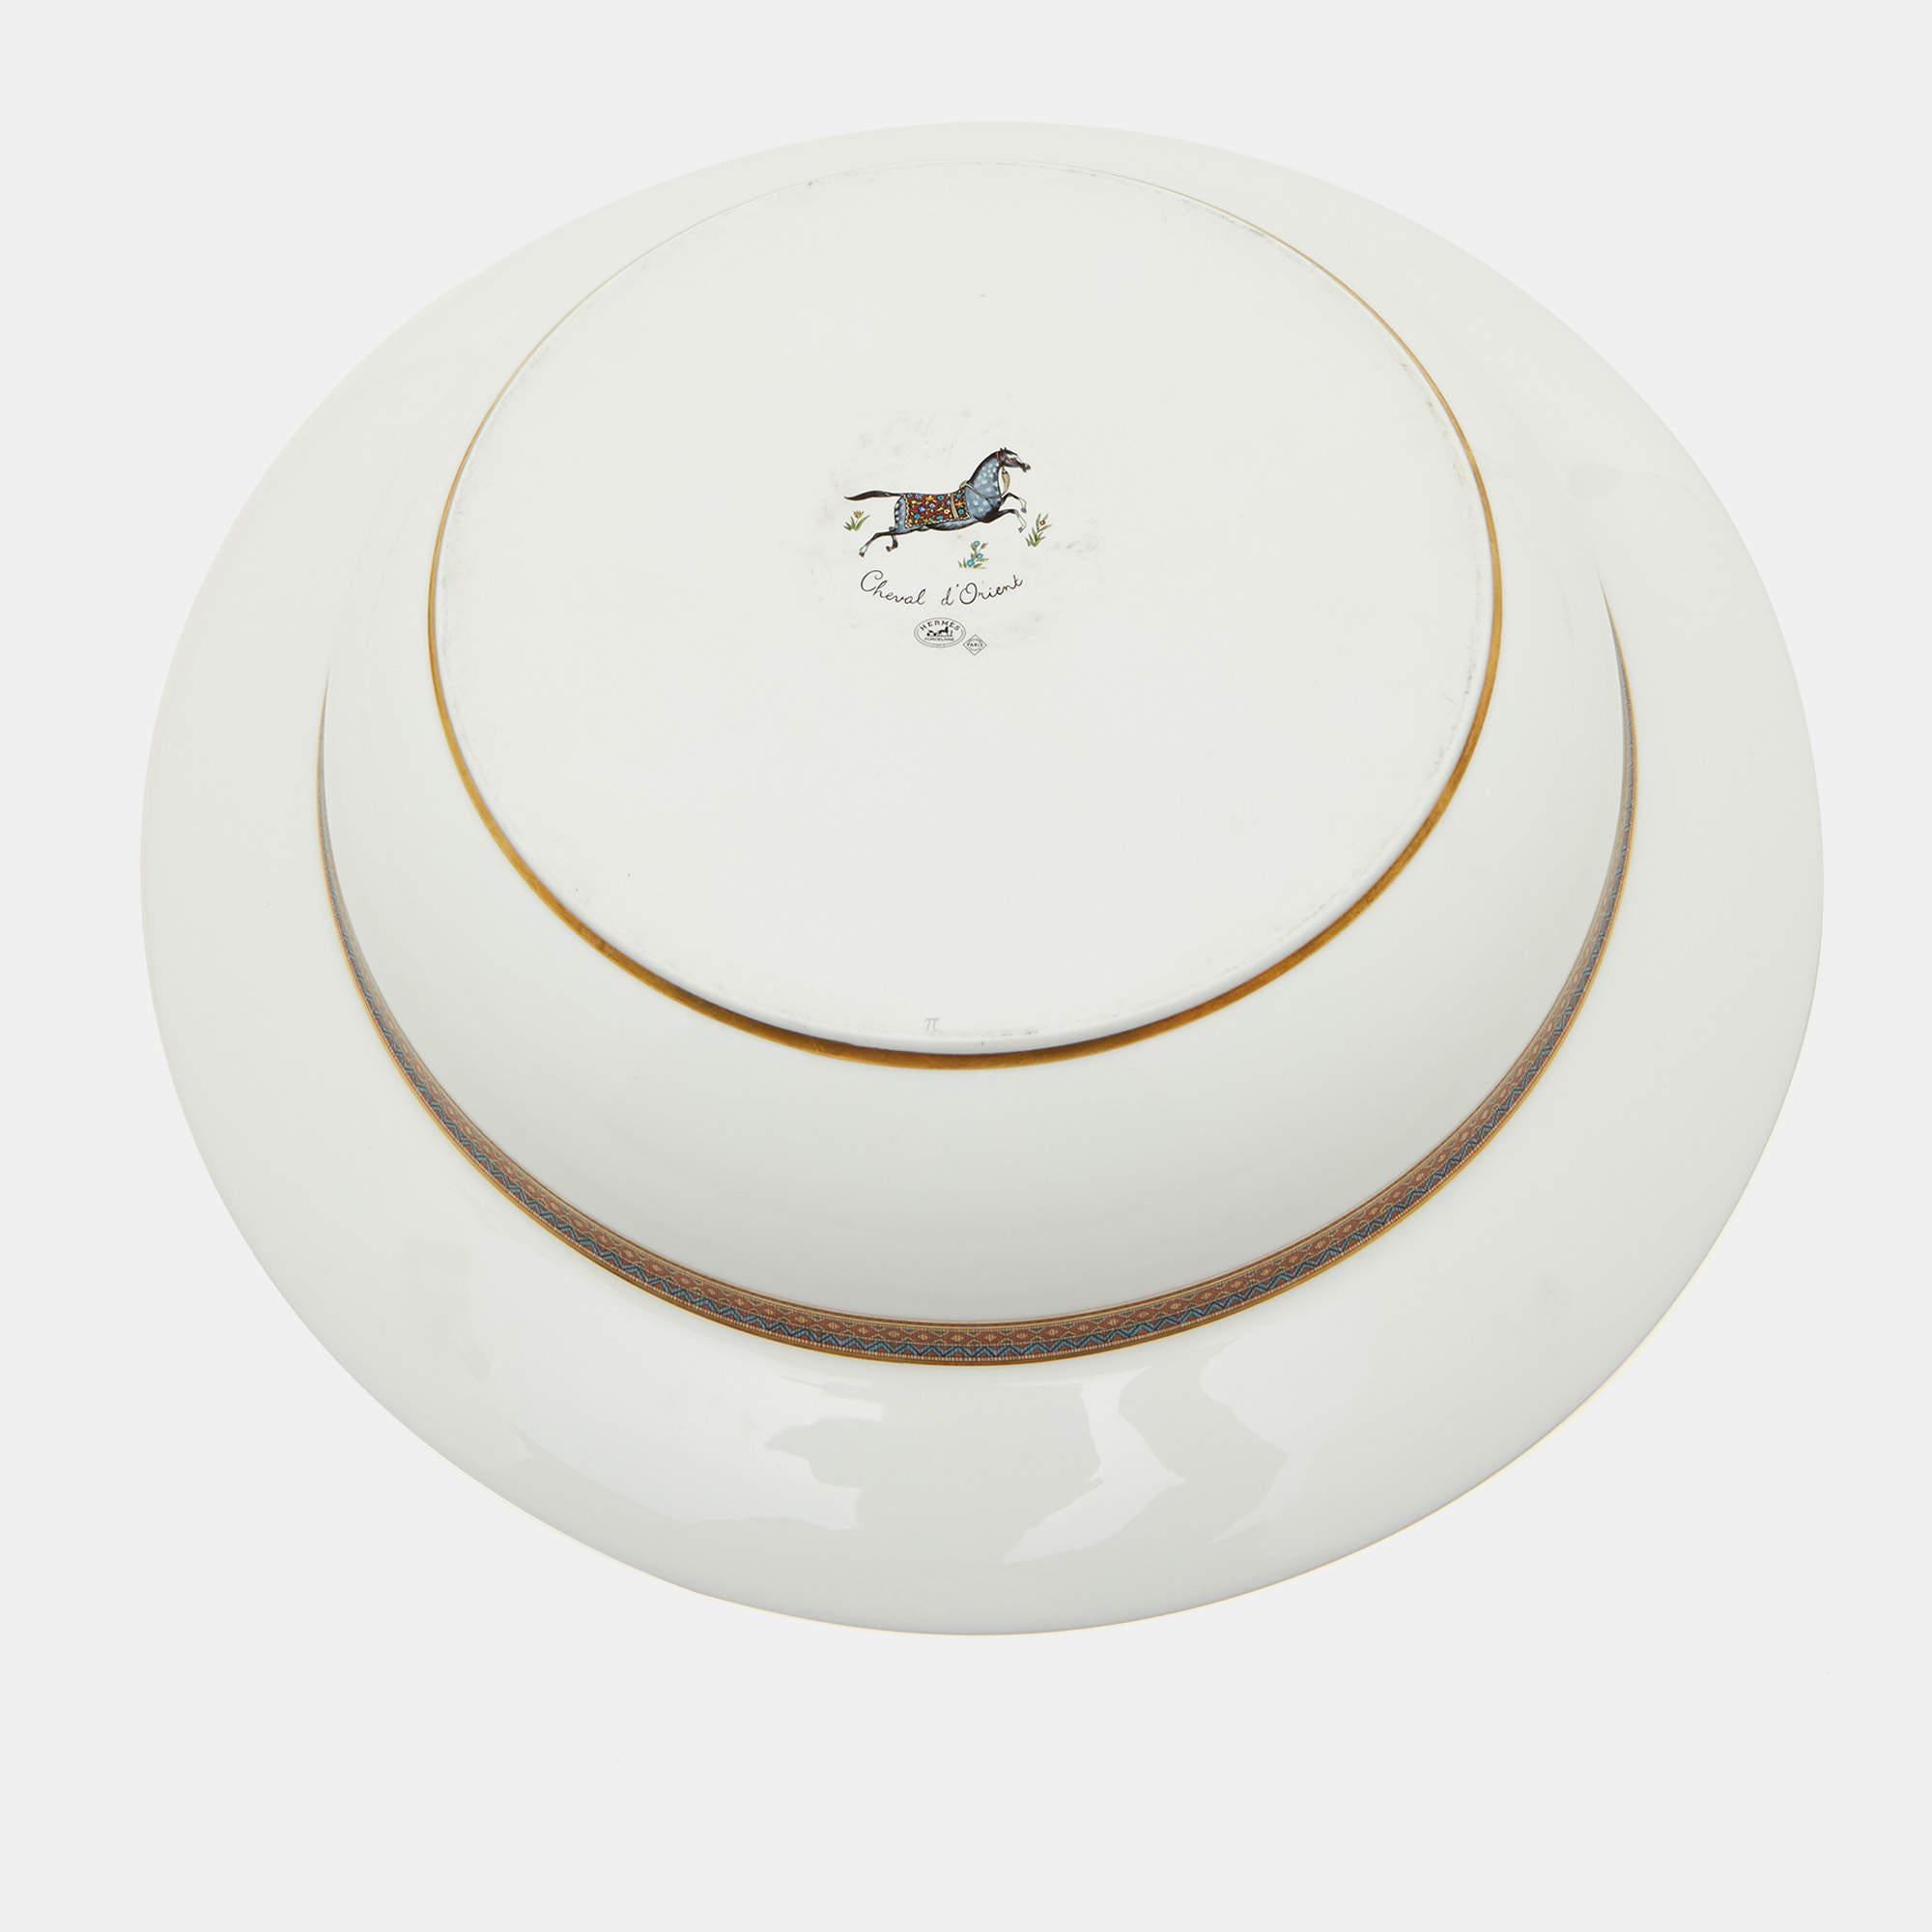 Das Hermès Tafelaufsatz-Set ist der Inbegriff von raffiniertem Luxus. Die aus makellos weißem Porzellan gefertigten Teller sind mit einem exquisiten Cheval d'Orient-Motiv versehen, das die Eleganz des Pferdesports widerspiegelt. Dieses Set aus 2